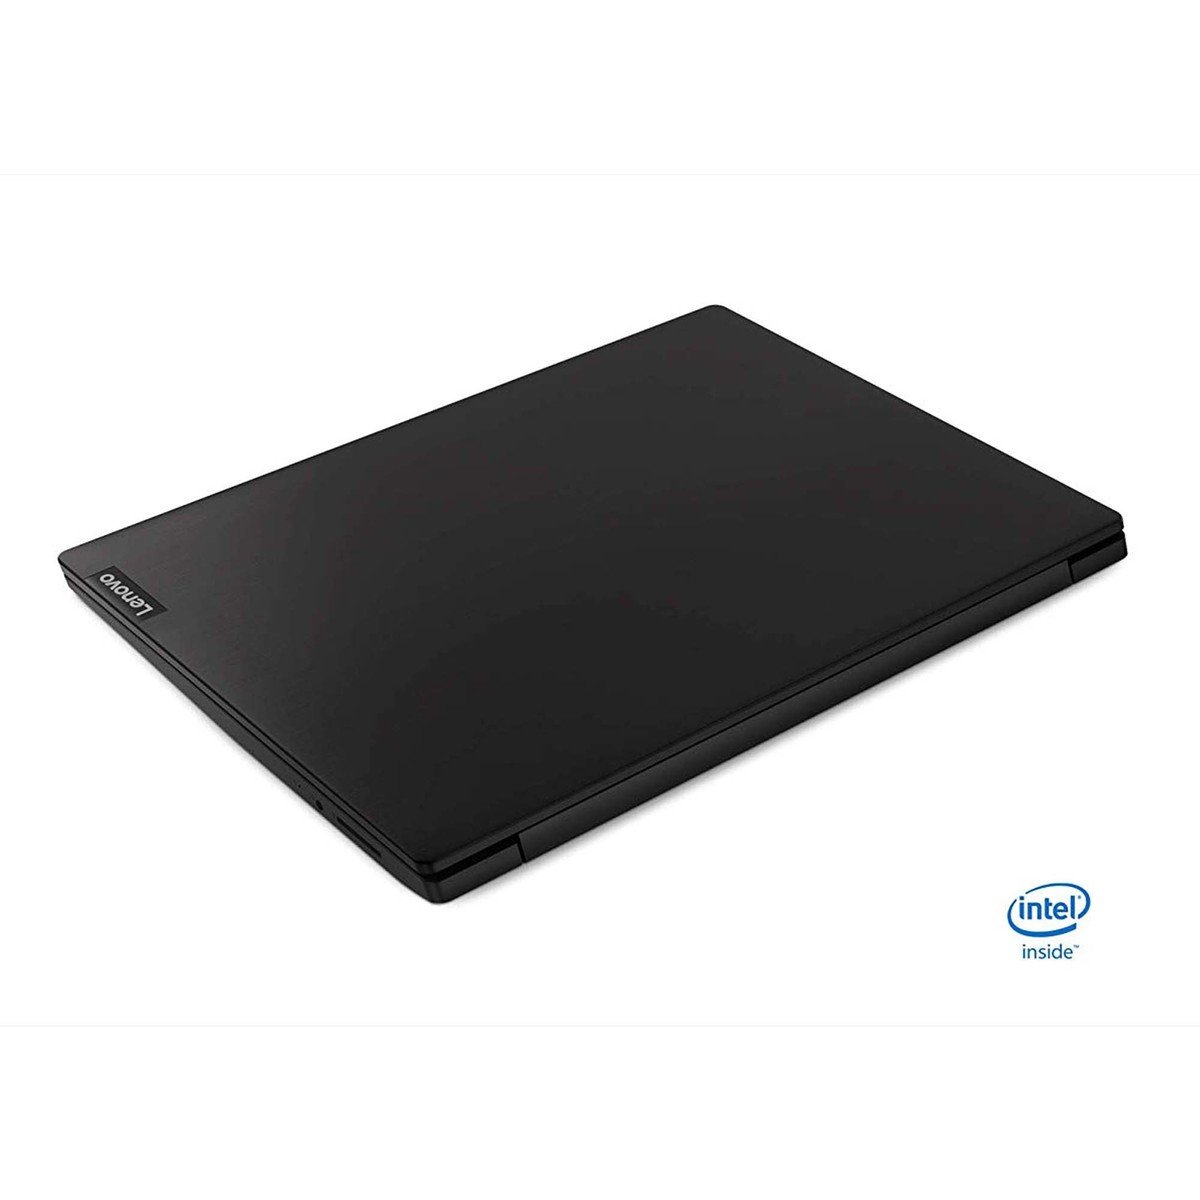 Lenovo Ideapad S145 Slim & Light Laptop, Intel Core i5-8265U, 14.0 Inch, 1TB HDD + 128GB SSD, 8GB RAM, Nvidia MX110, Win10, Eng-Ara KB, BLACK